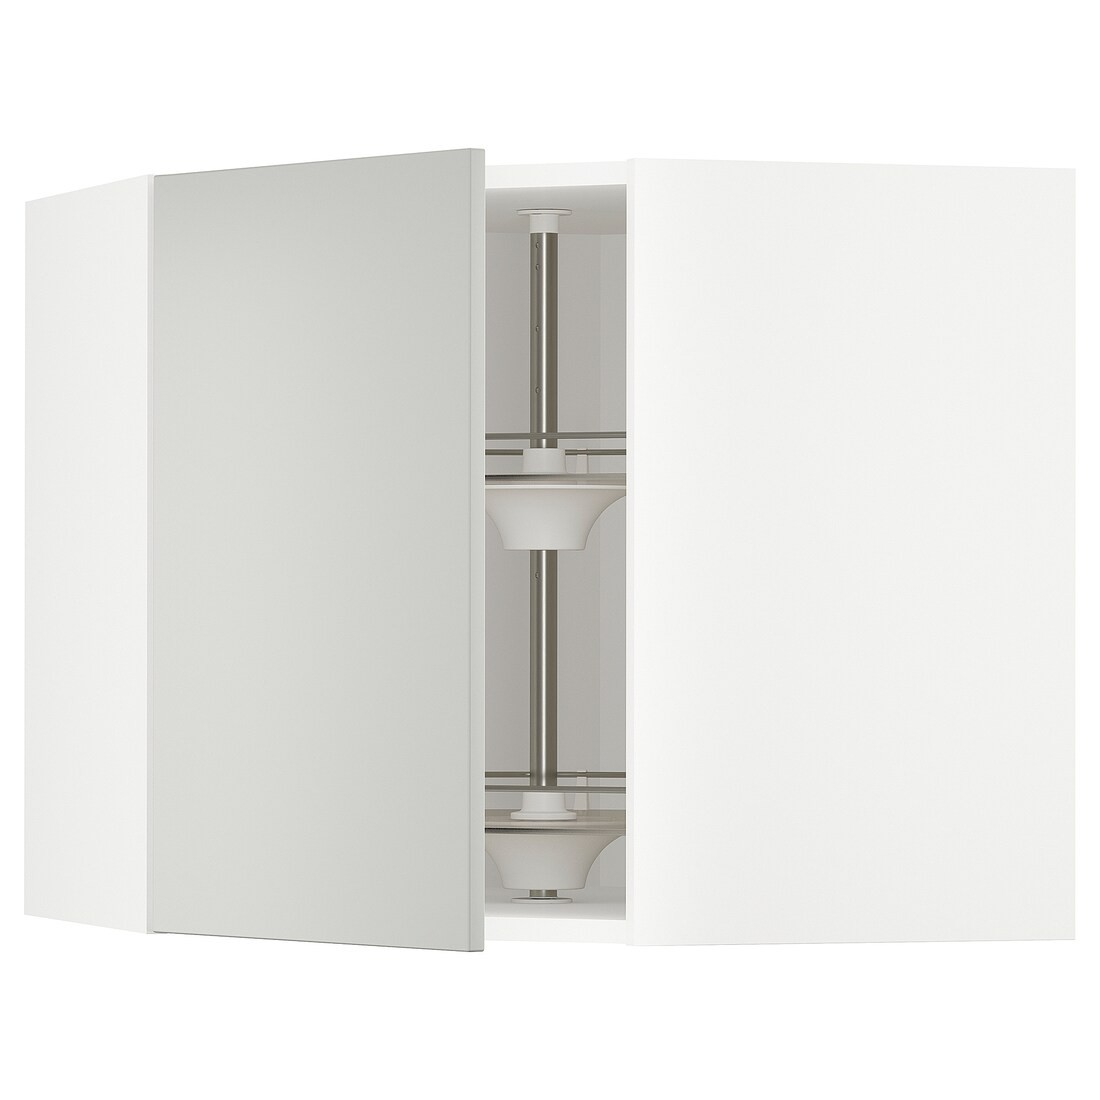 METOD Угловой навесной шкаф с каруселью, белый / Хавсторп светло-серый, 68x60 см